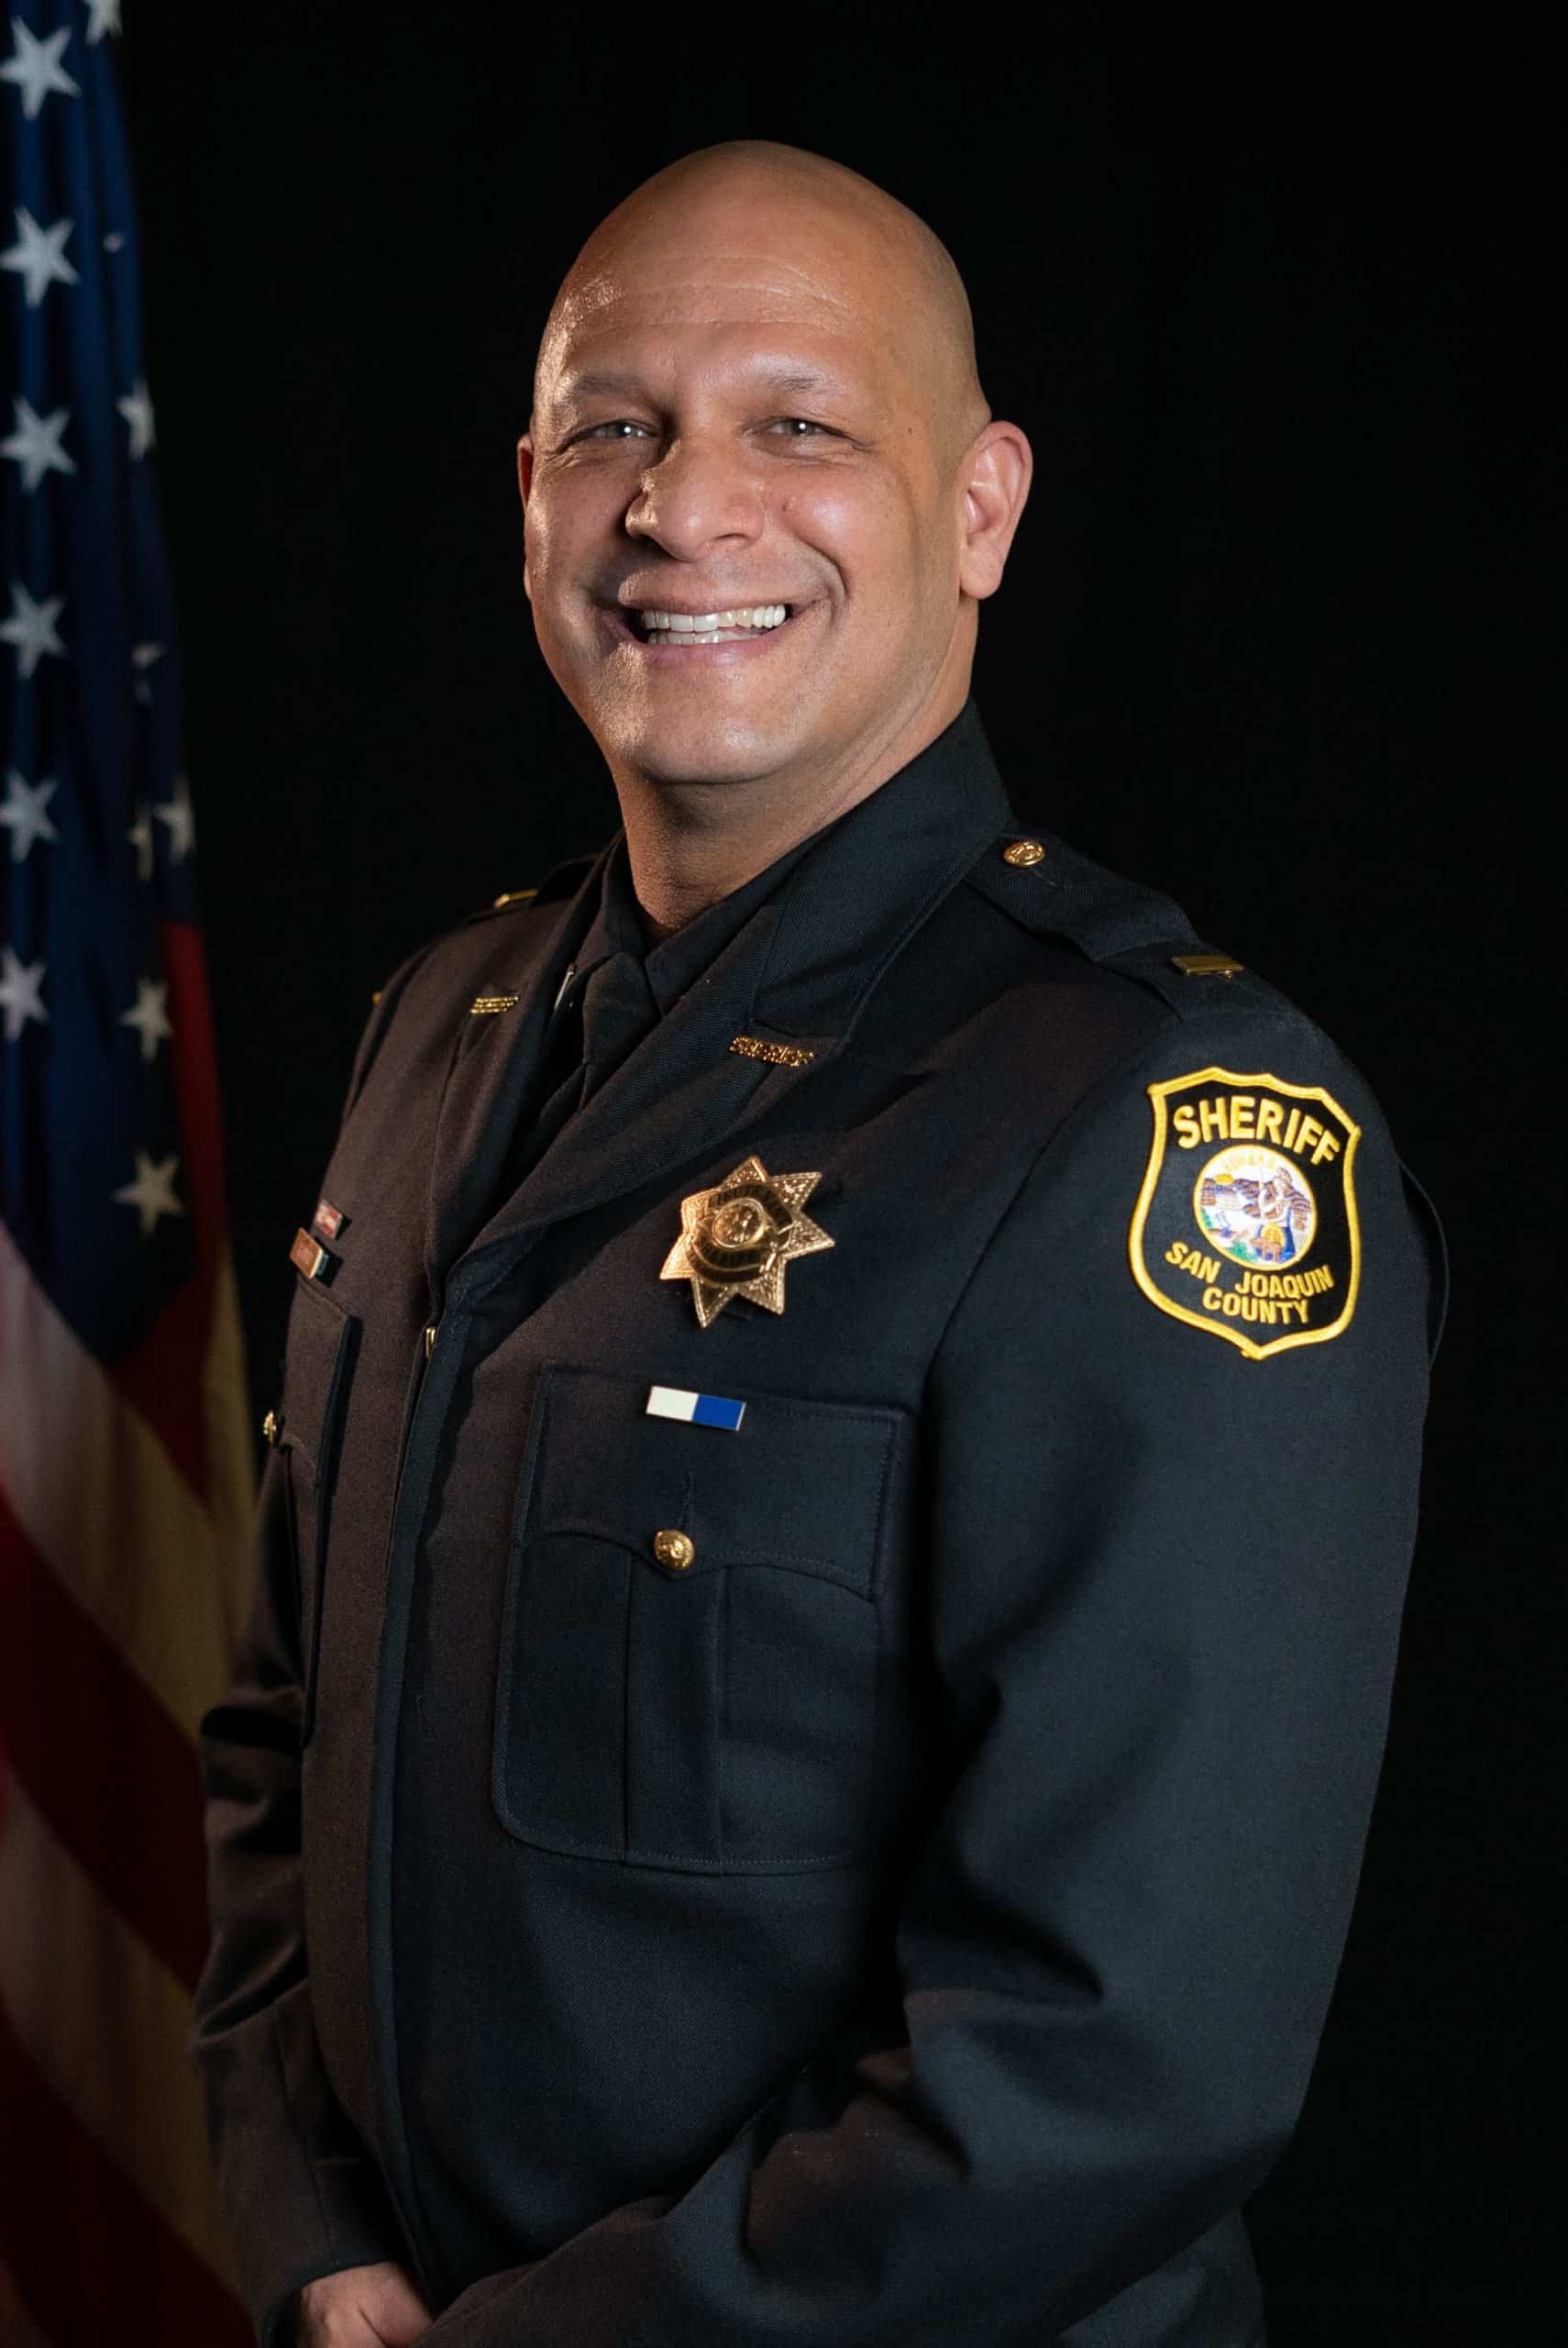 San Joaquin County Sheriff's Office Lieutenant Rudy Lovato